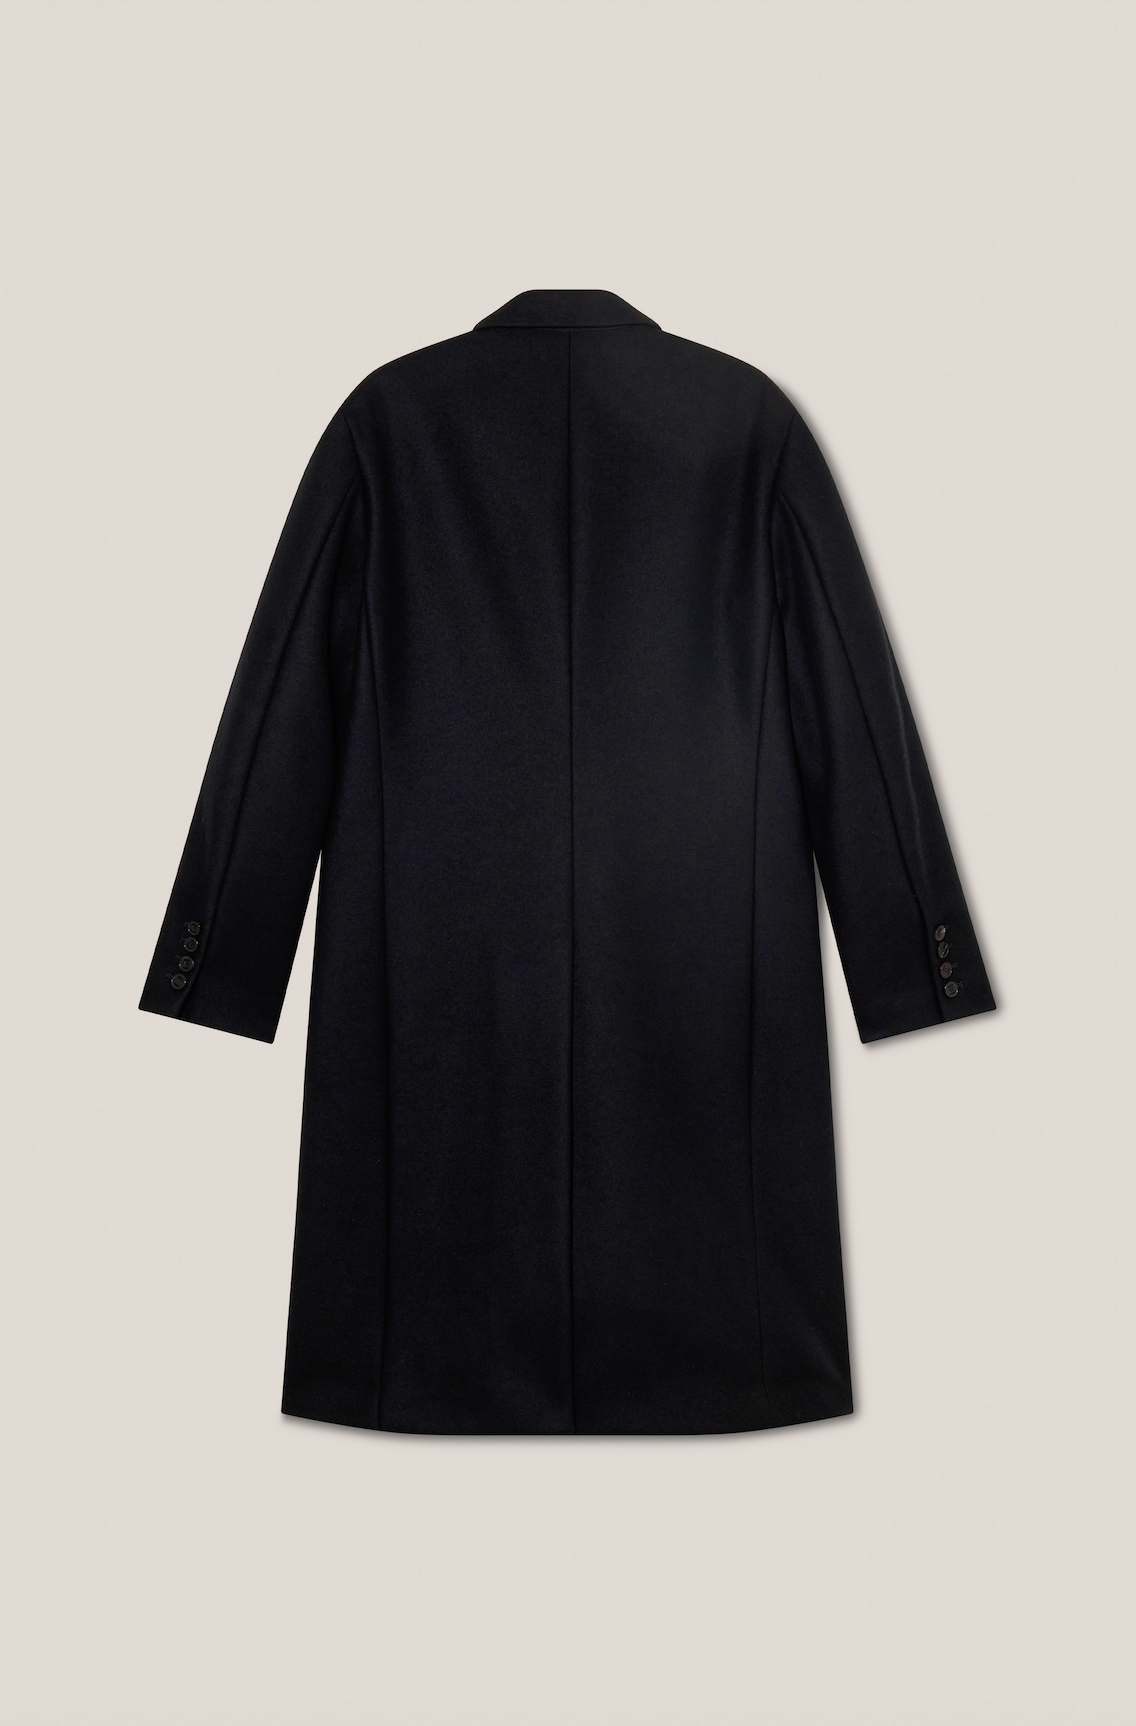 Black Sartorial Coat